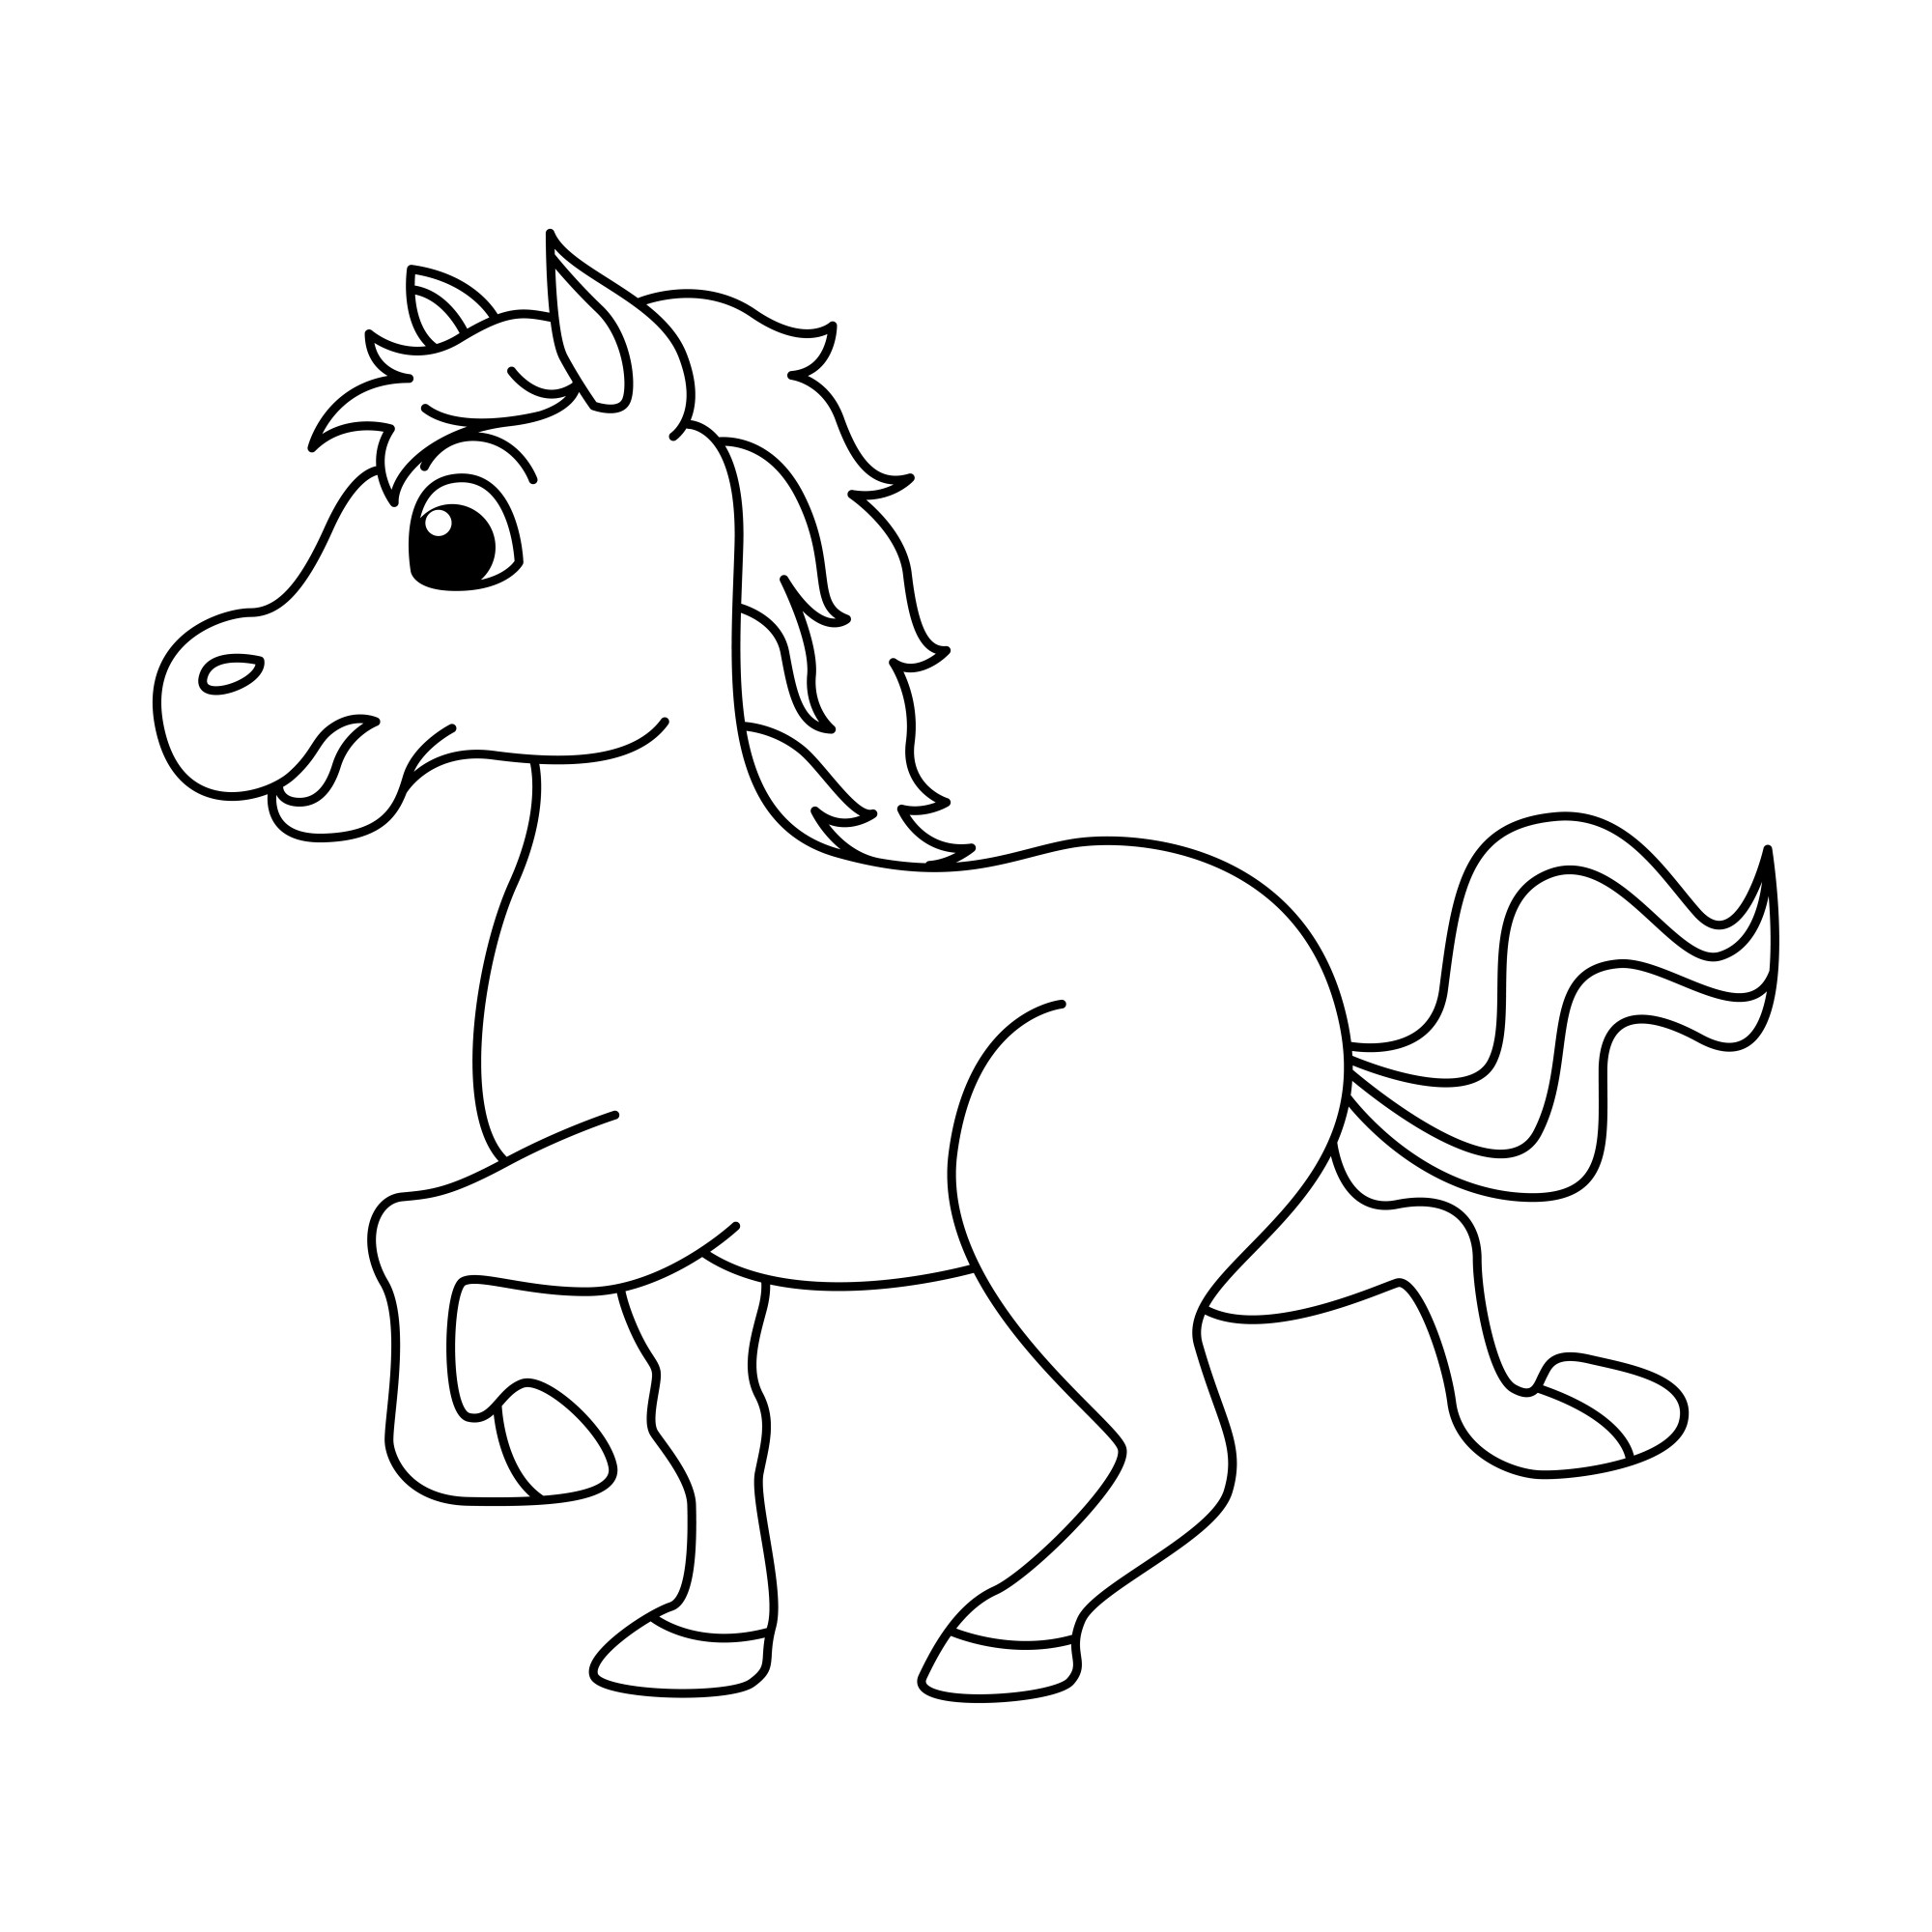 Раскраска для детей: лошадь «Веселый скакун»